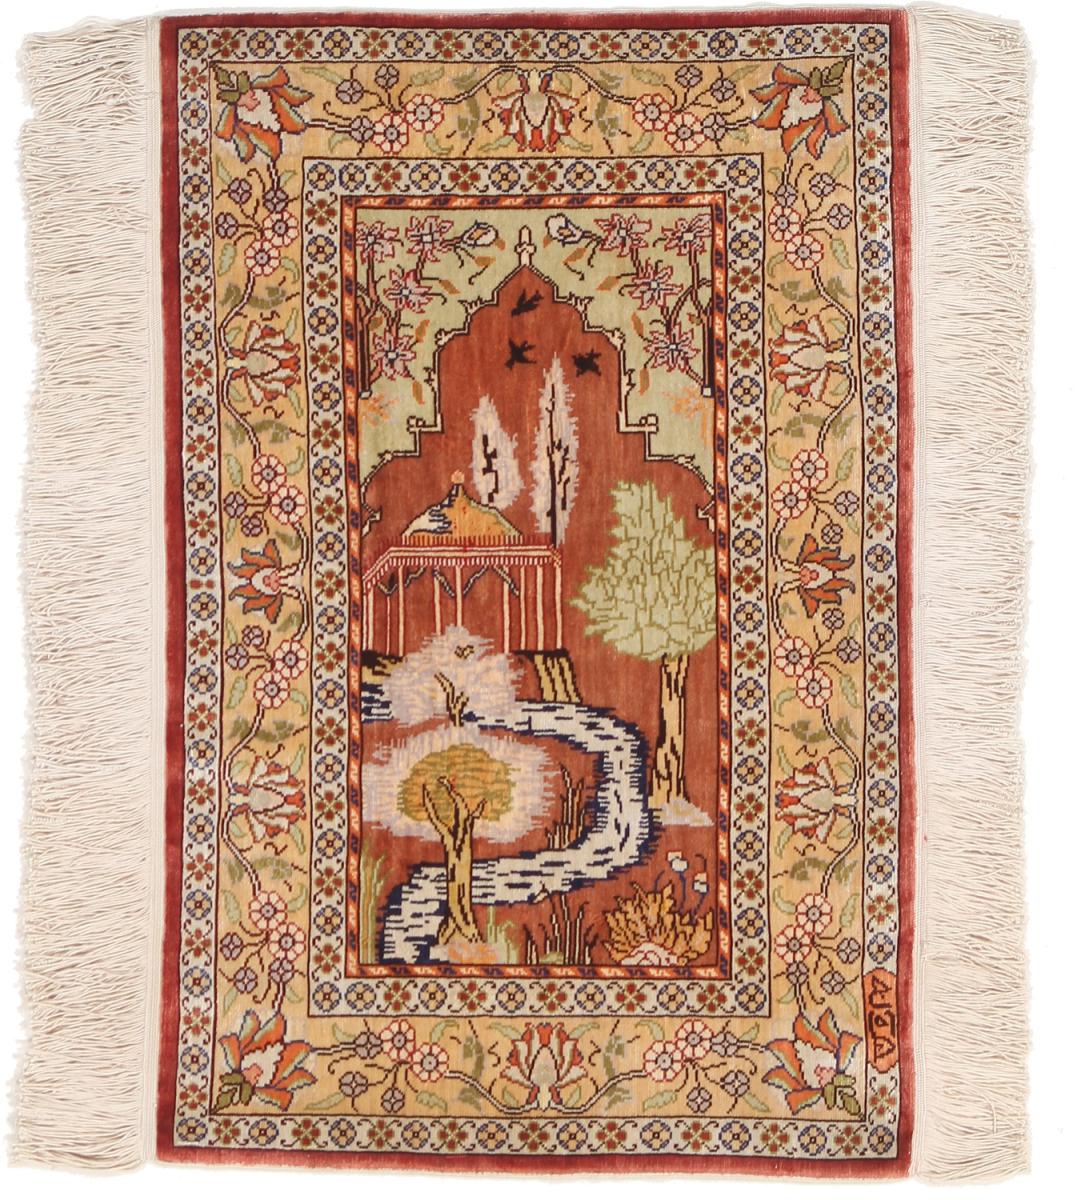  Hereke Zijde 56x38 56x38, Perzisch tapijt Handgeknoopte